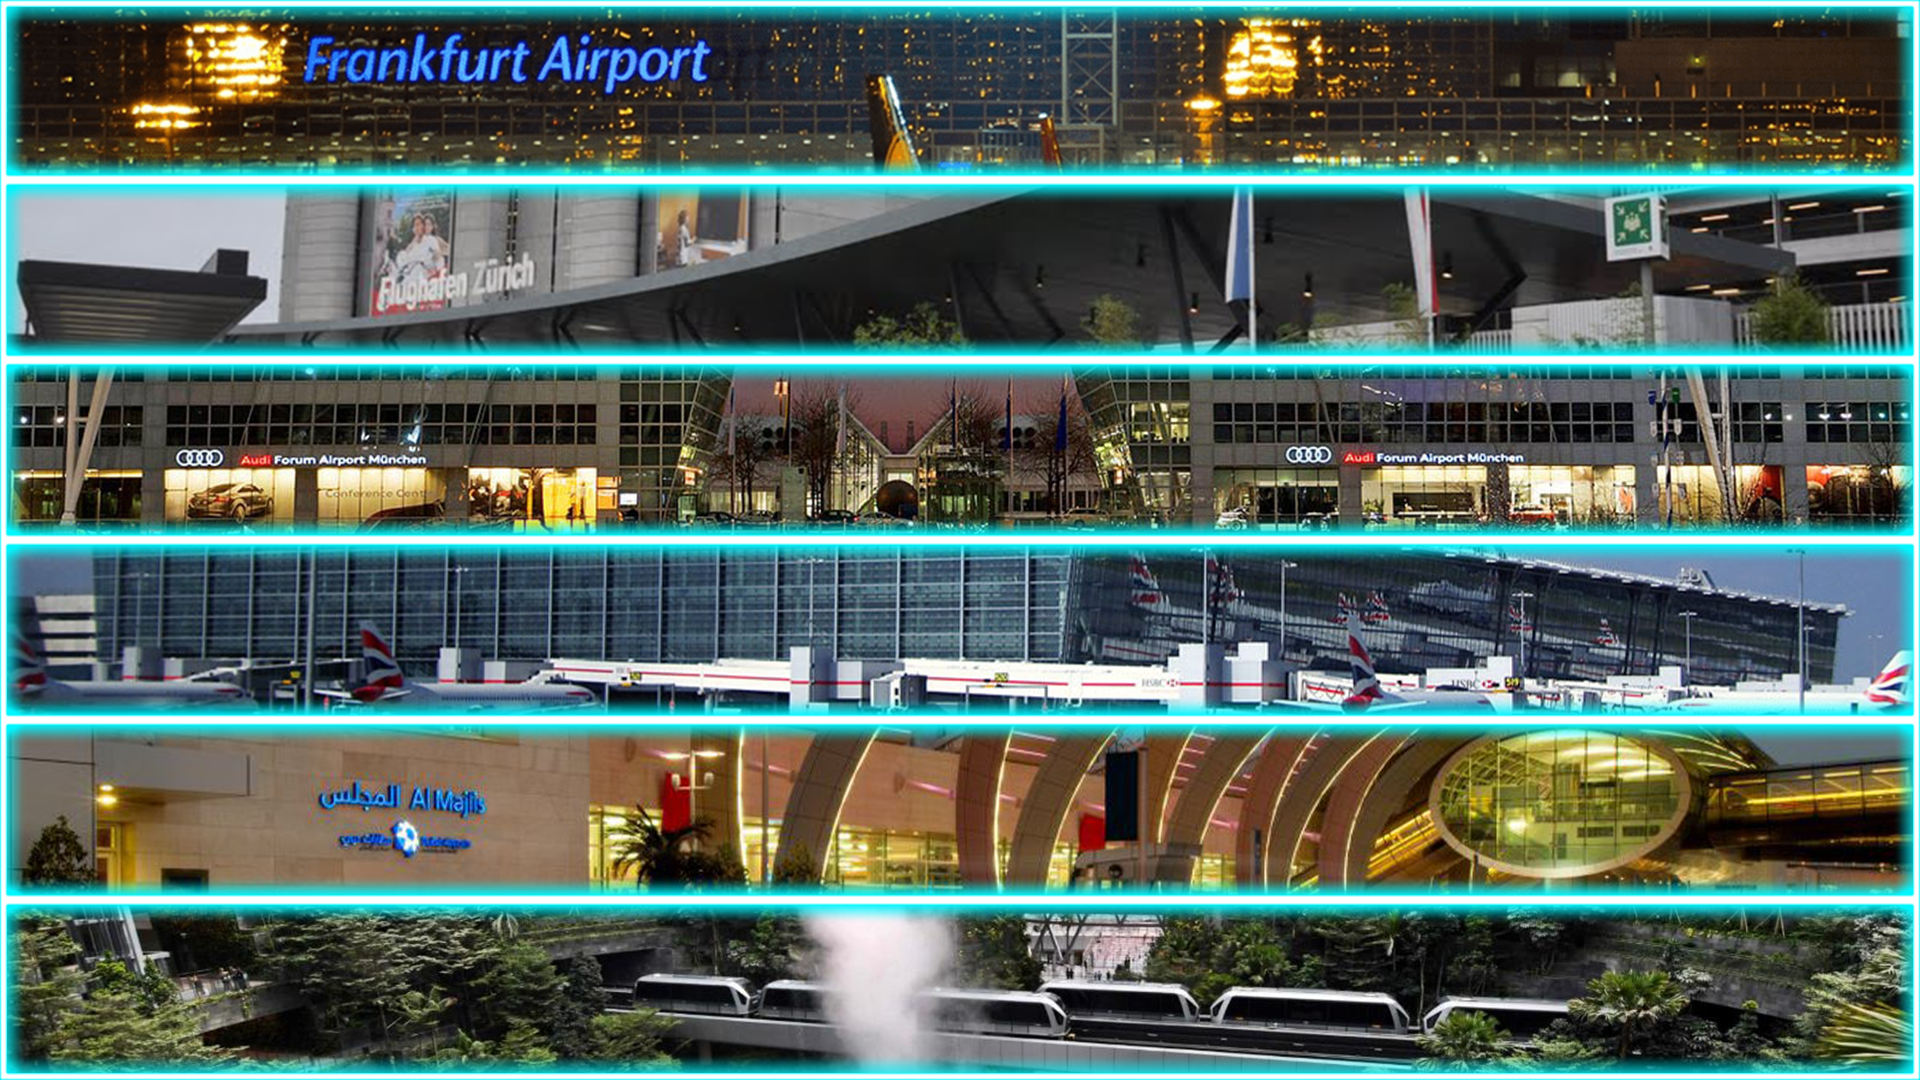 Les 10 aéroports les plus luxieux du monde entier